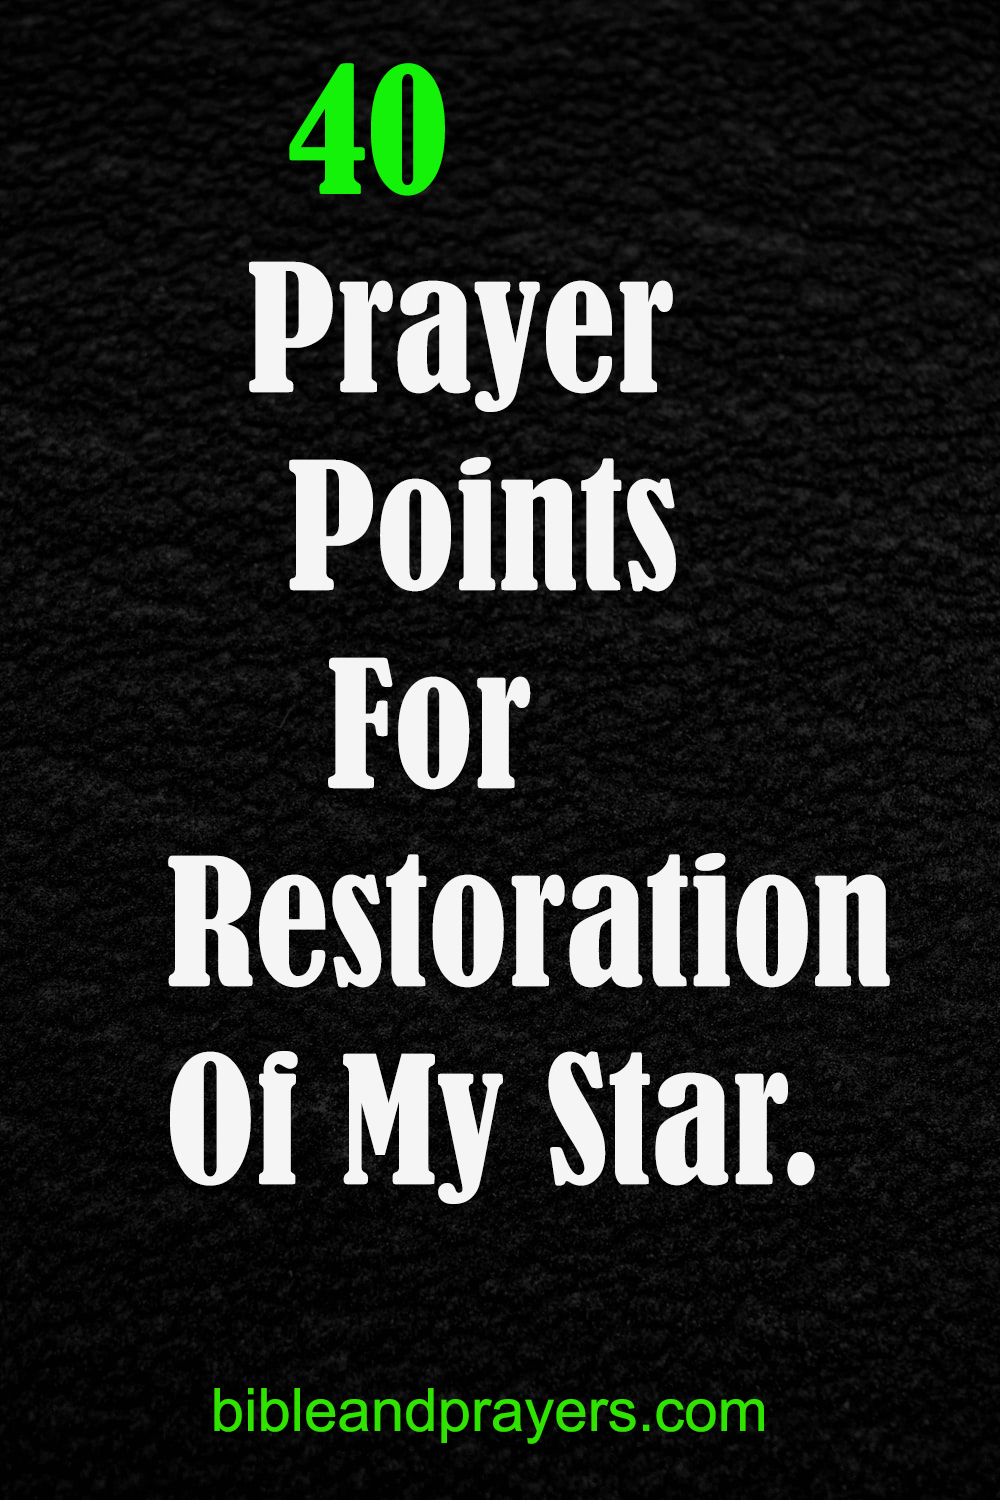 40 Prayer Points For Restoration Of My Star.